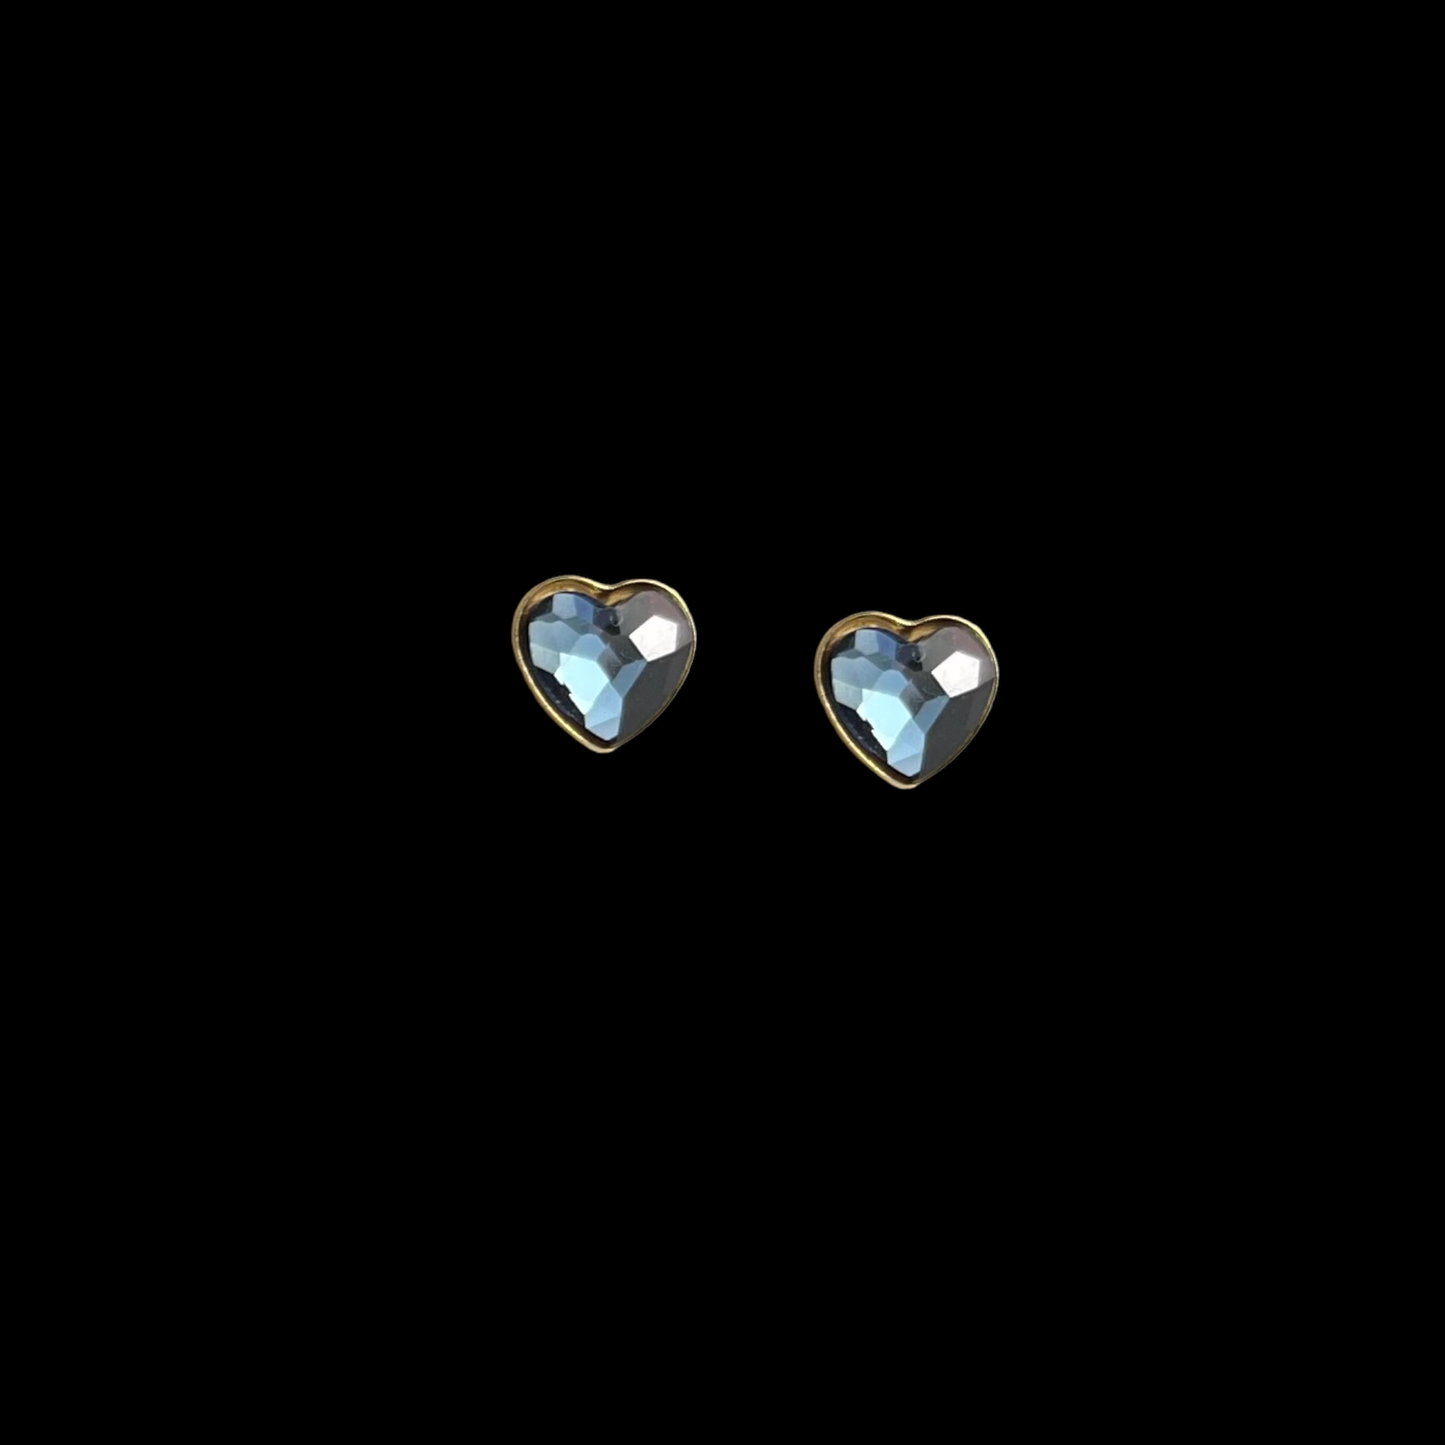 Boucles d'oreilles "puces" avec cristaux Swarovski, collection LISA, J266, argent doré